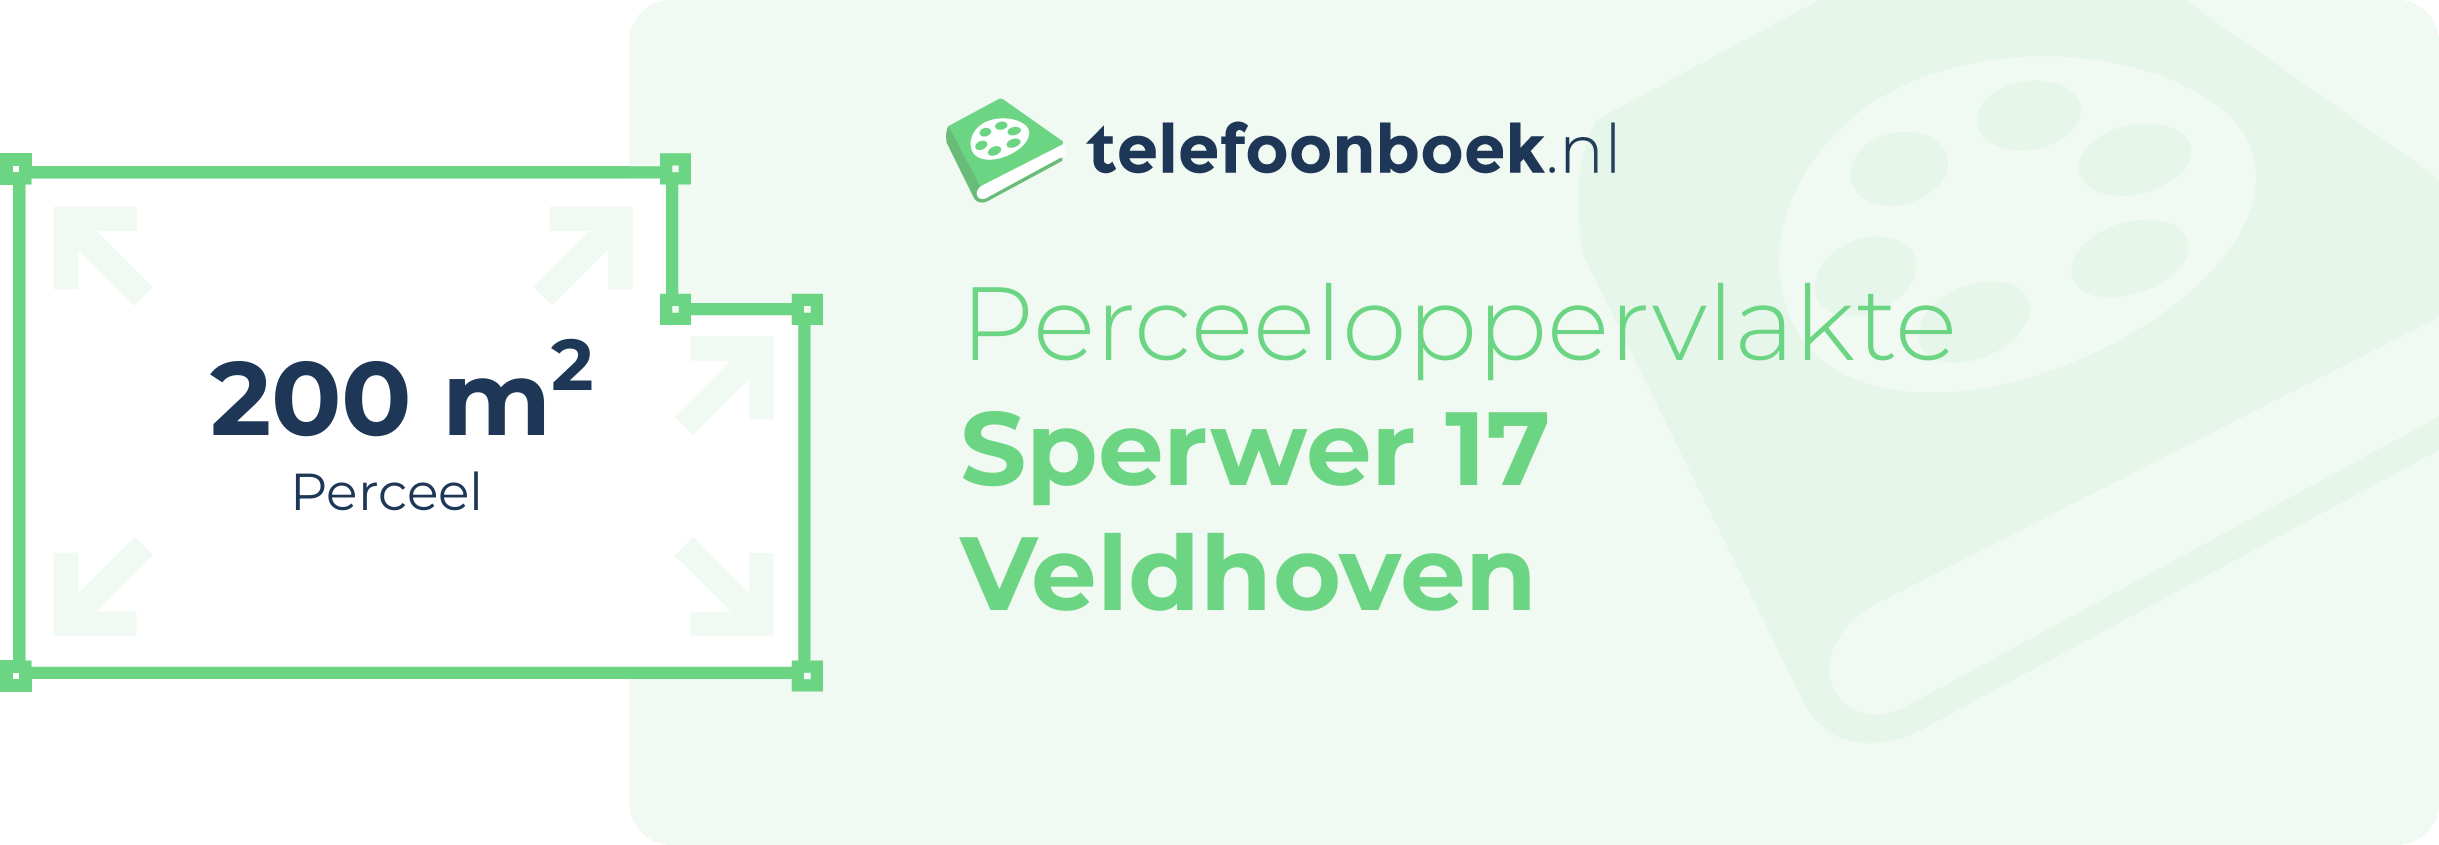 Perceeloppervlakte Sperwer 17 Veldhoven